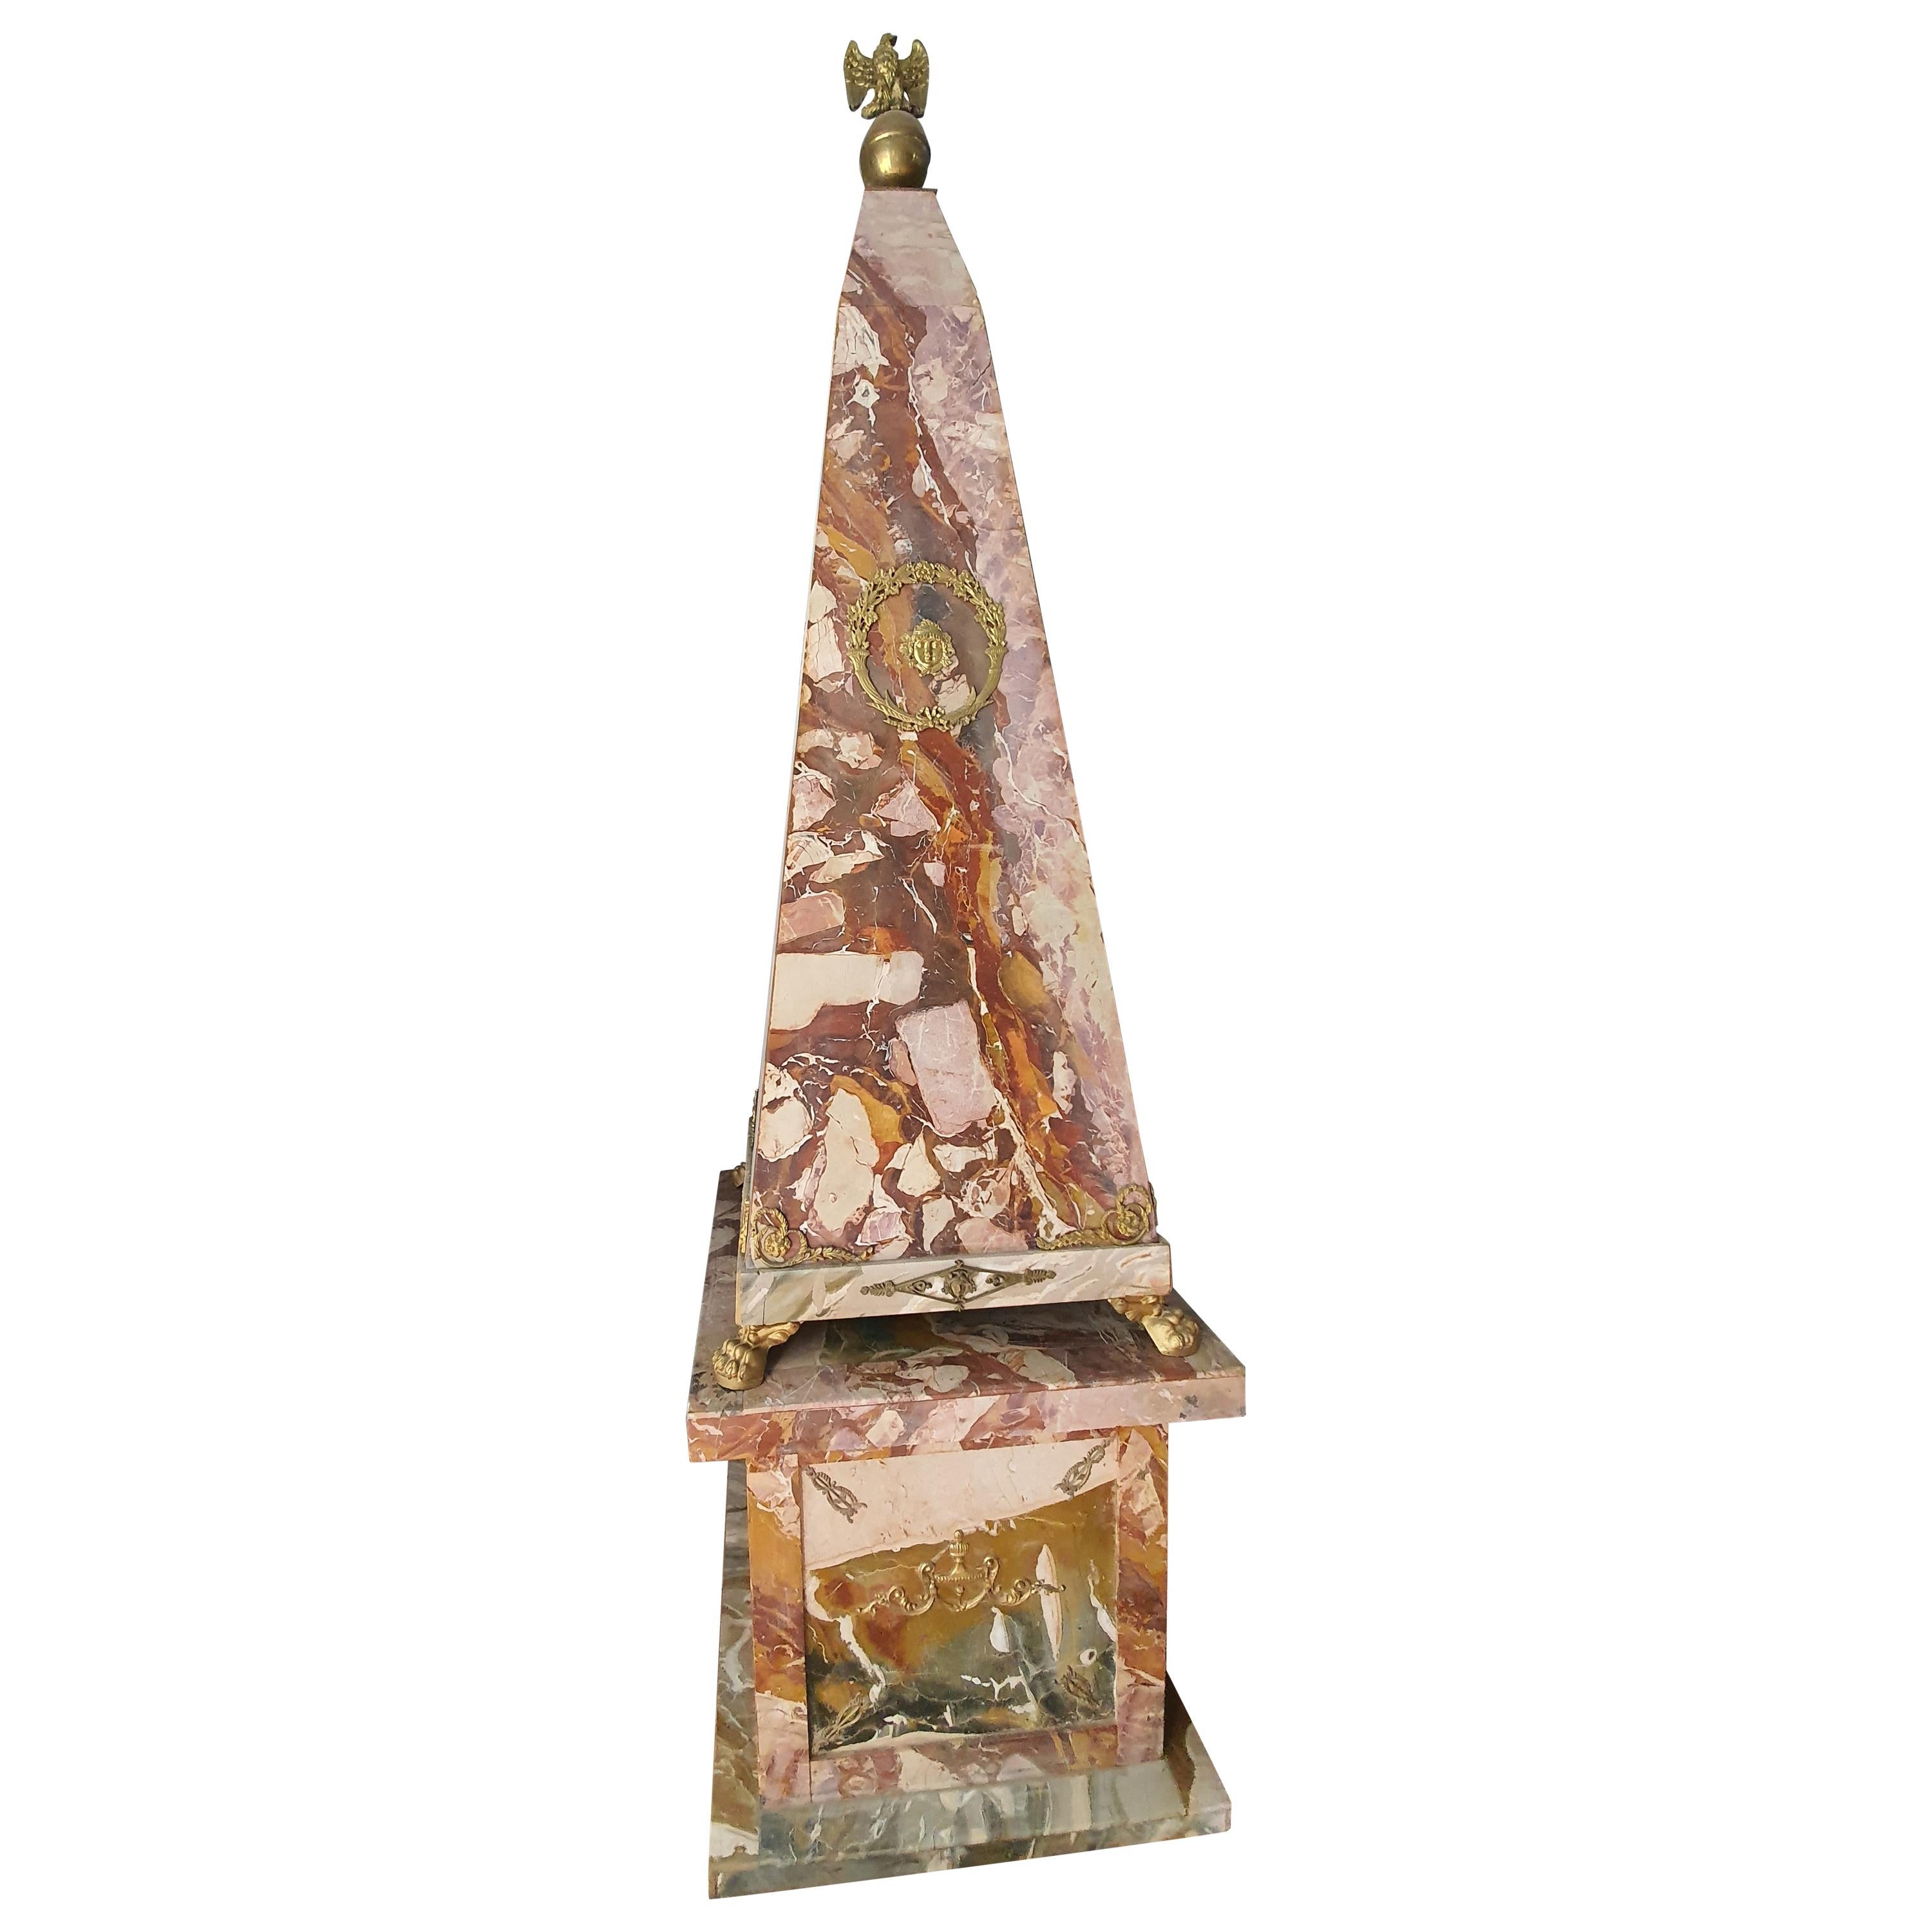 Seltenes Paar großer Obelisken, die vollständig mit sizilianischem offenem Buschjaspis verblendet sind. Vergoldete Bronzeapplikationen schmücken die umlaufenden Obelisken. Im oberen Teil dominieren zwei Adler aus vergoldeter Bronze.